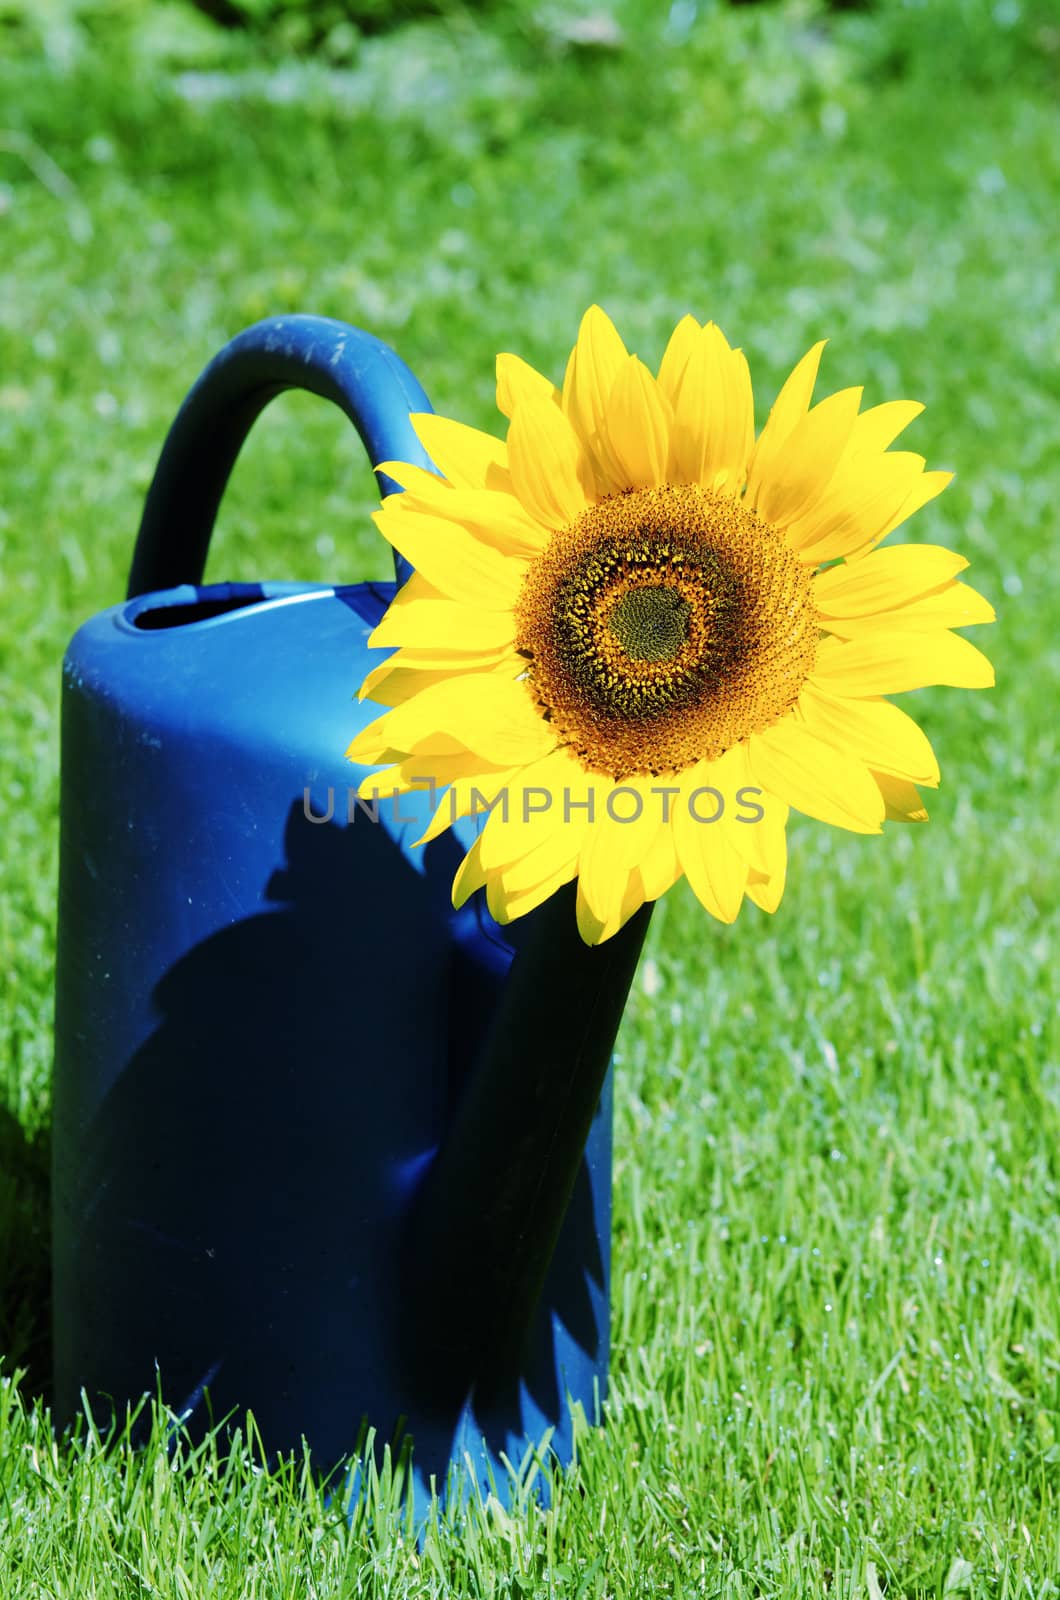 a sunflower in a watering bucket